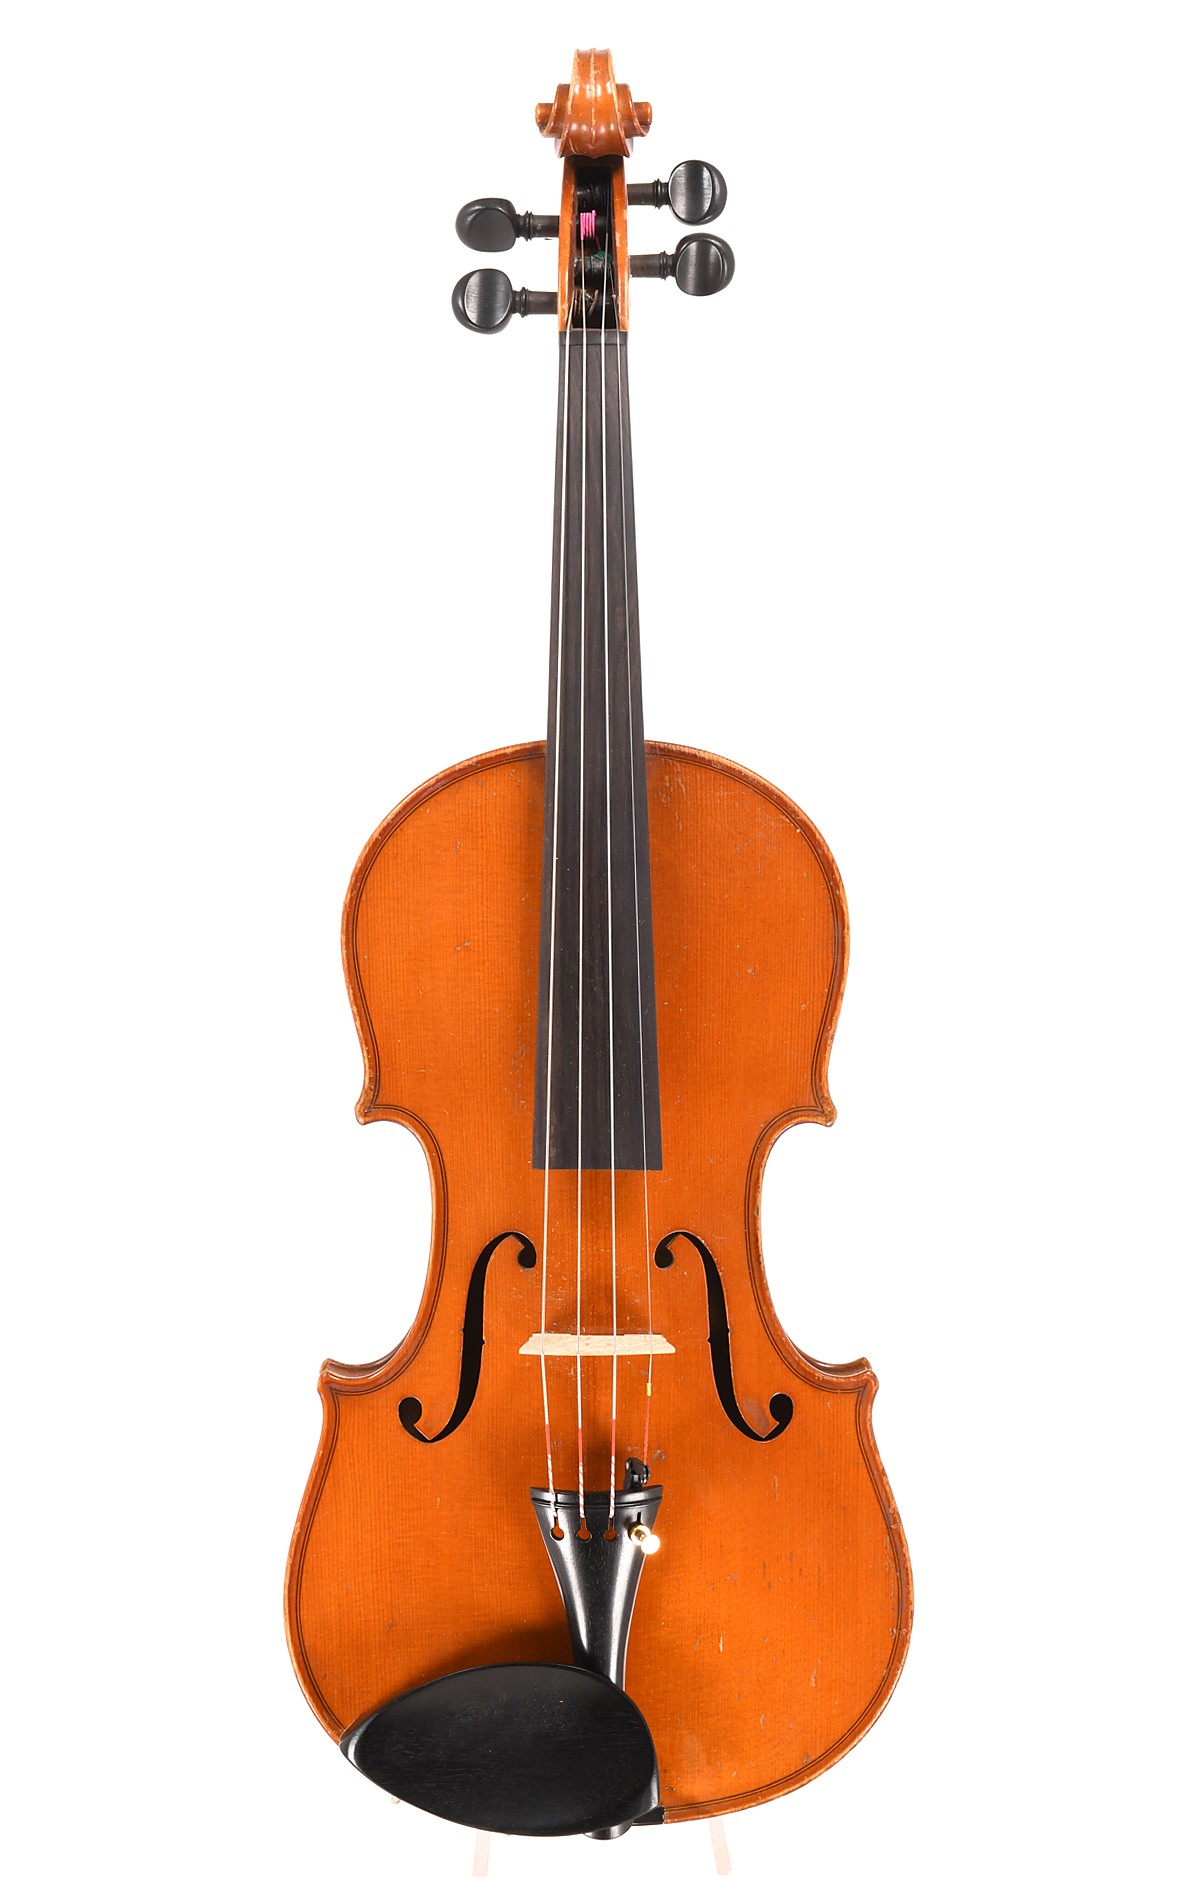 Antique violin from Markneukirchen, c.1890